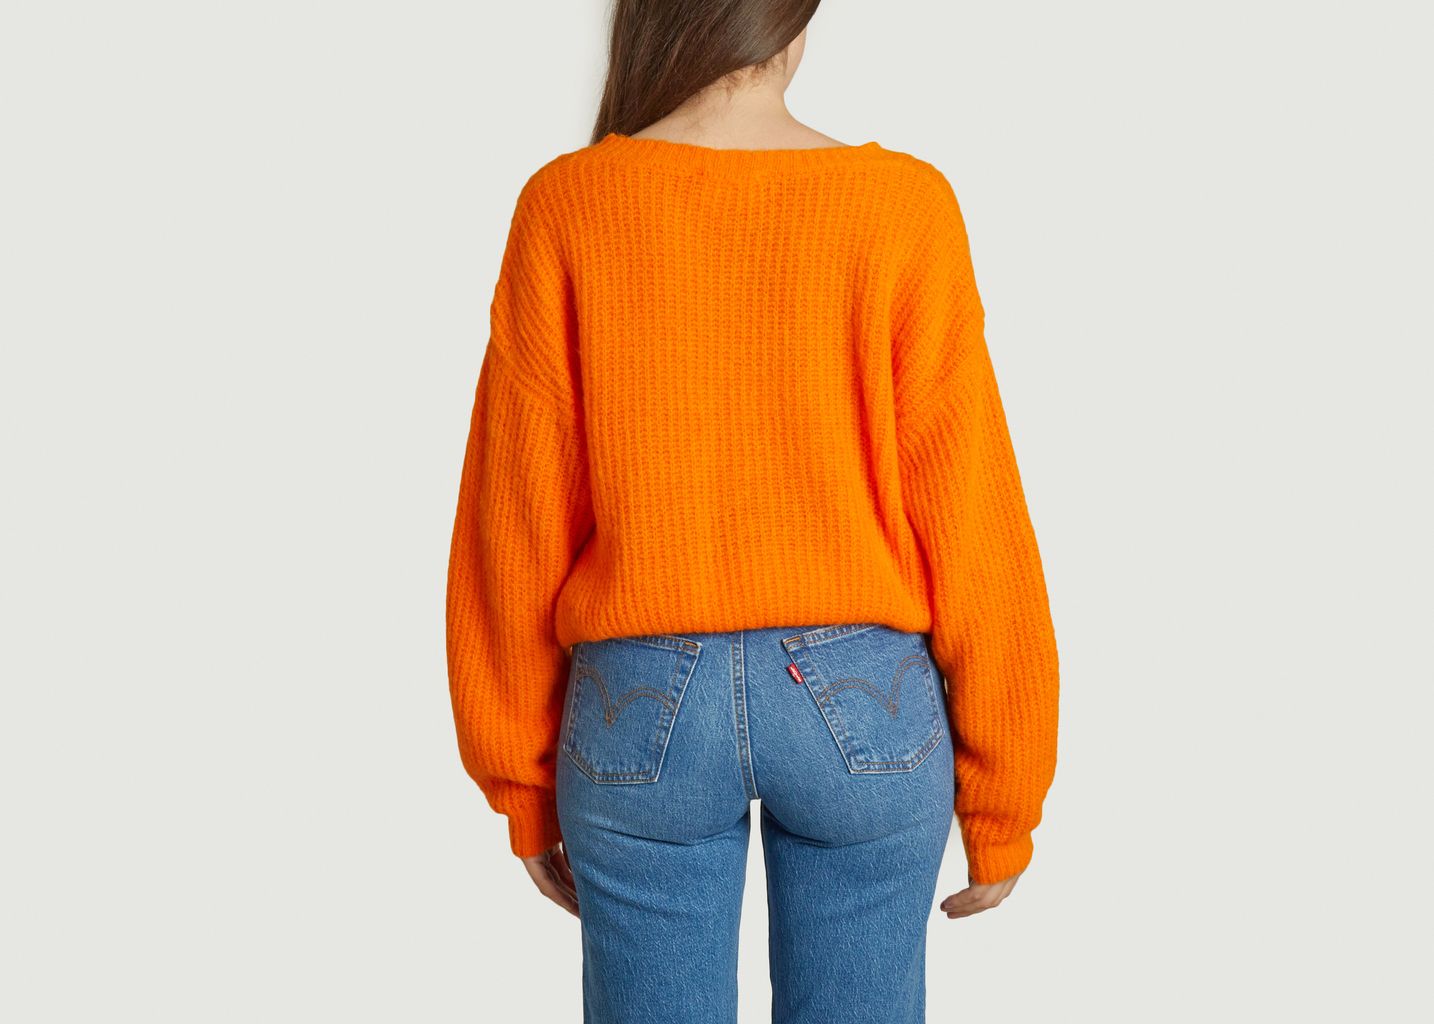 East sweater - American Vintage